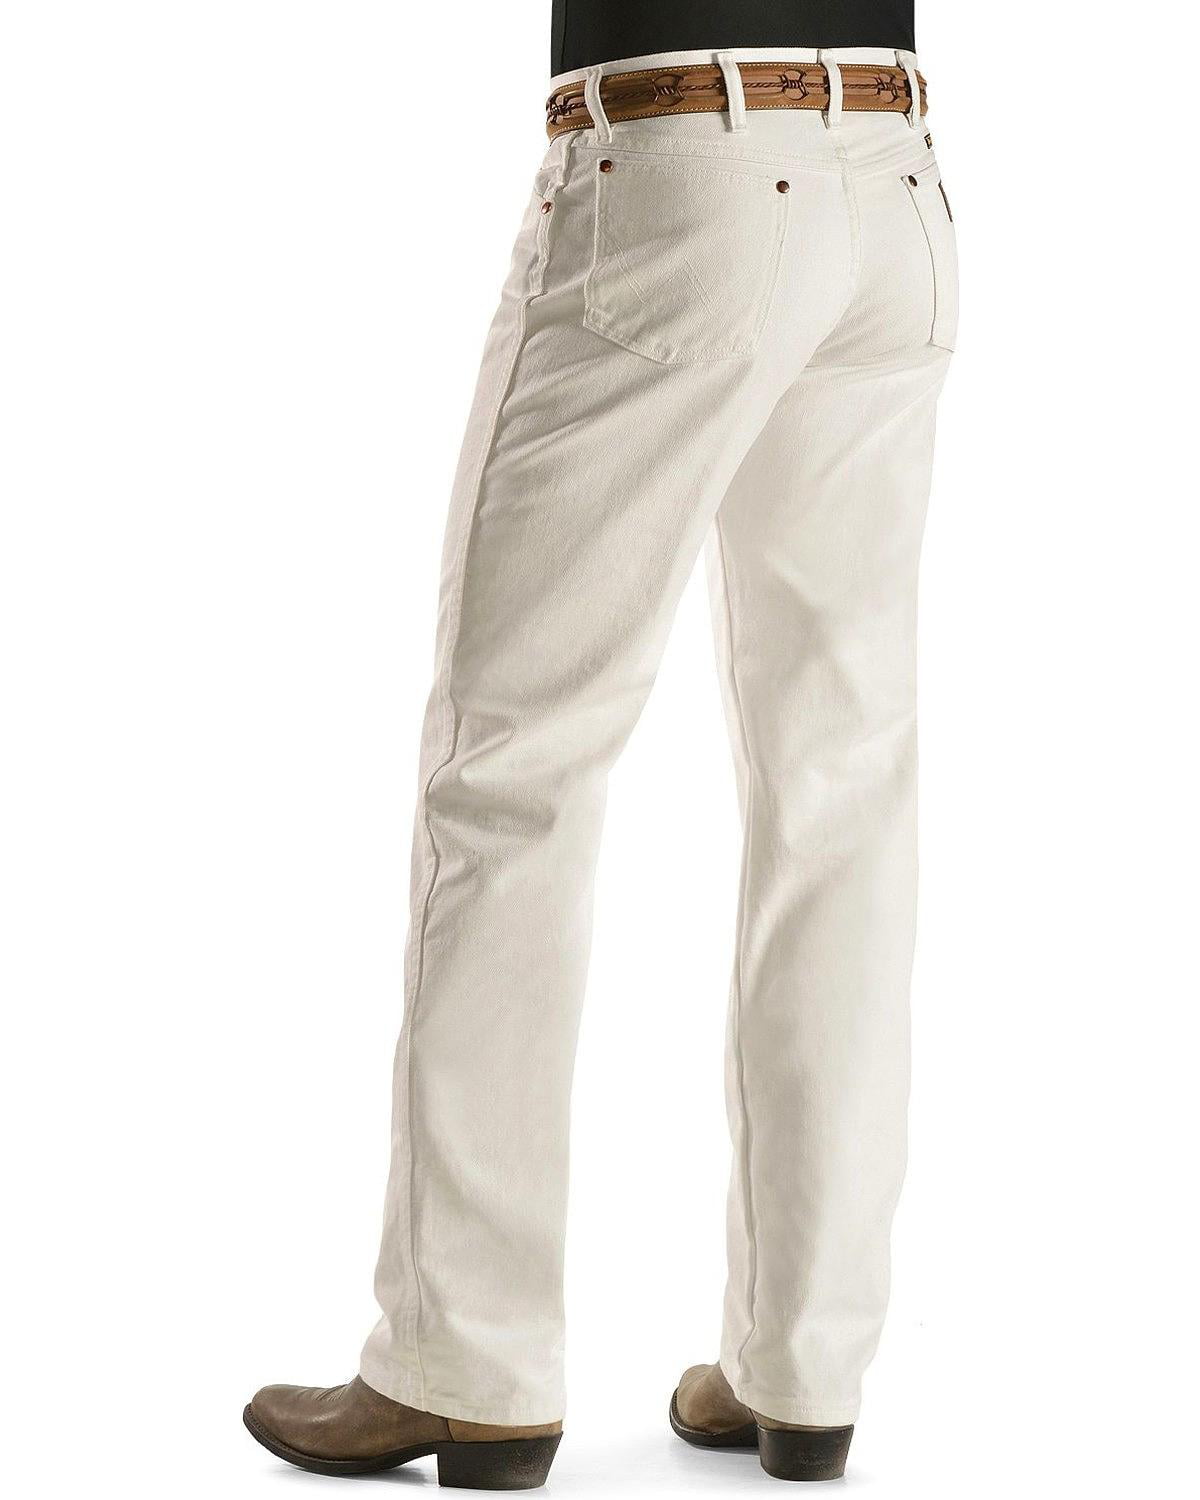 white wrangler pants